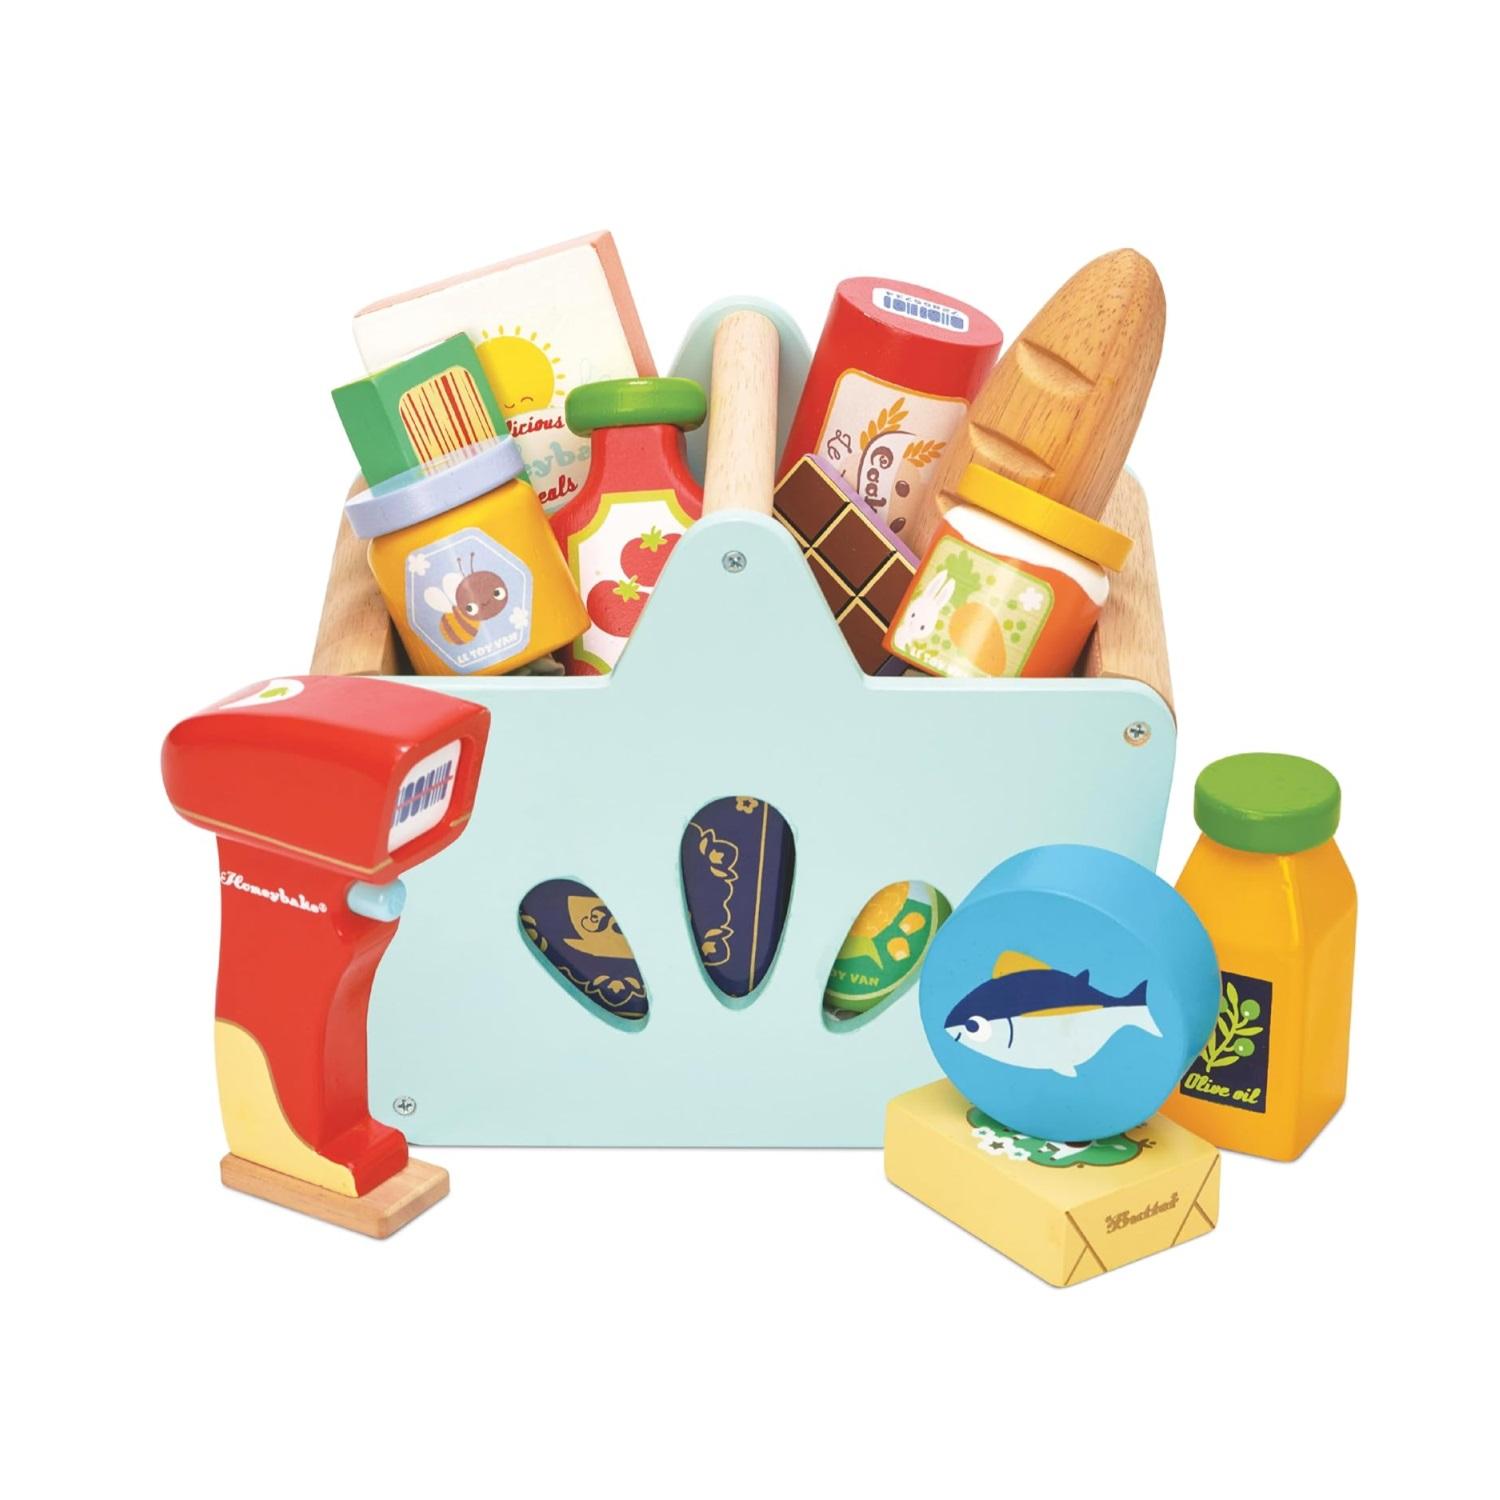 Montessori le toy van groceries set